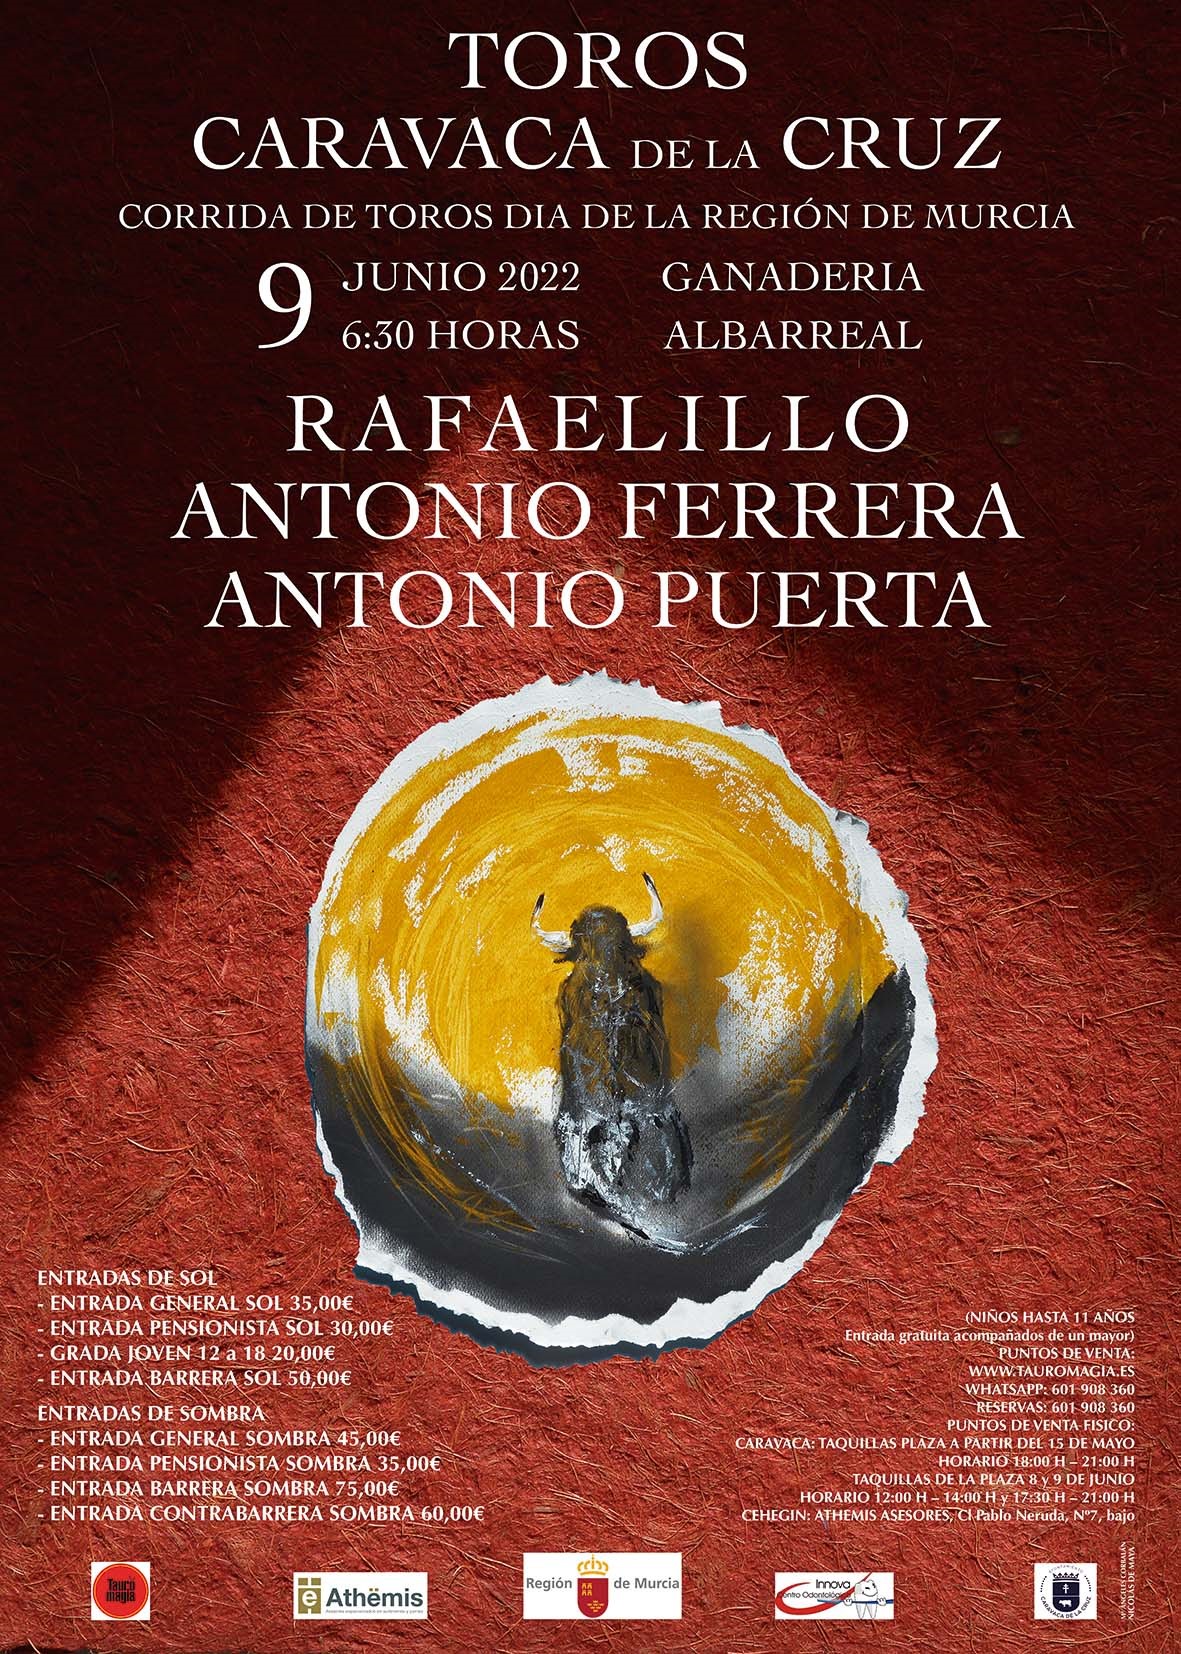 Toros Caravaca de la Cruz 9 June 2022.